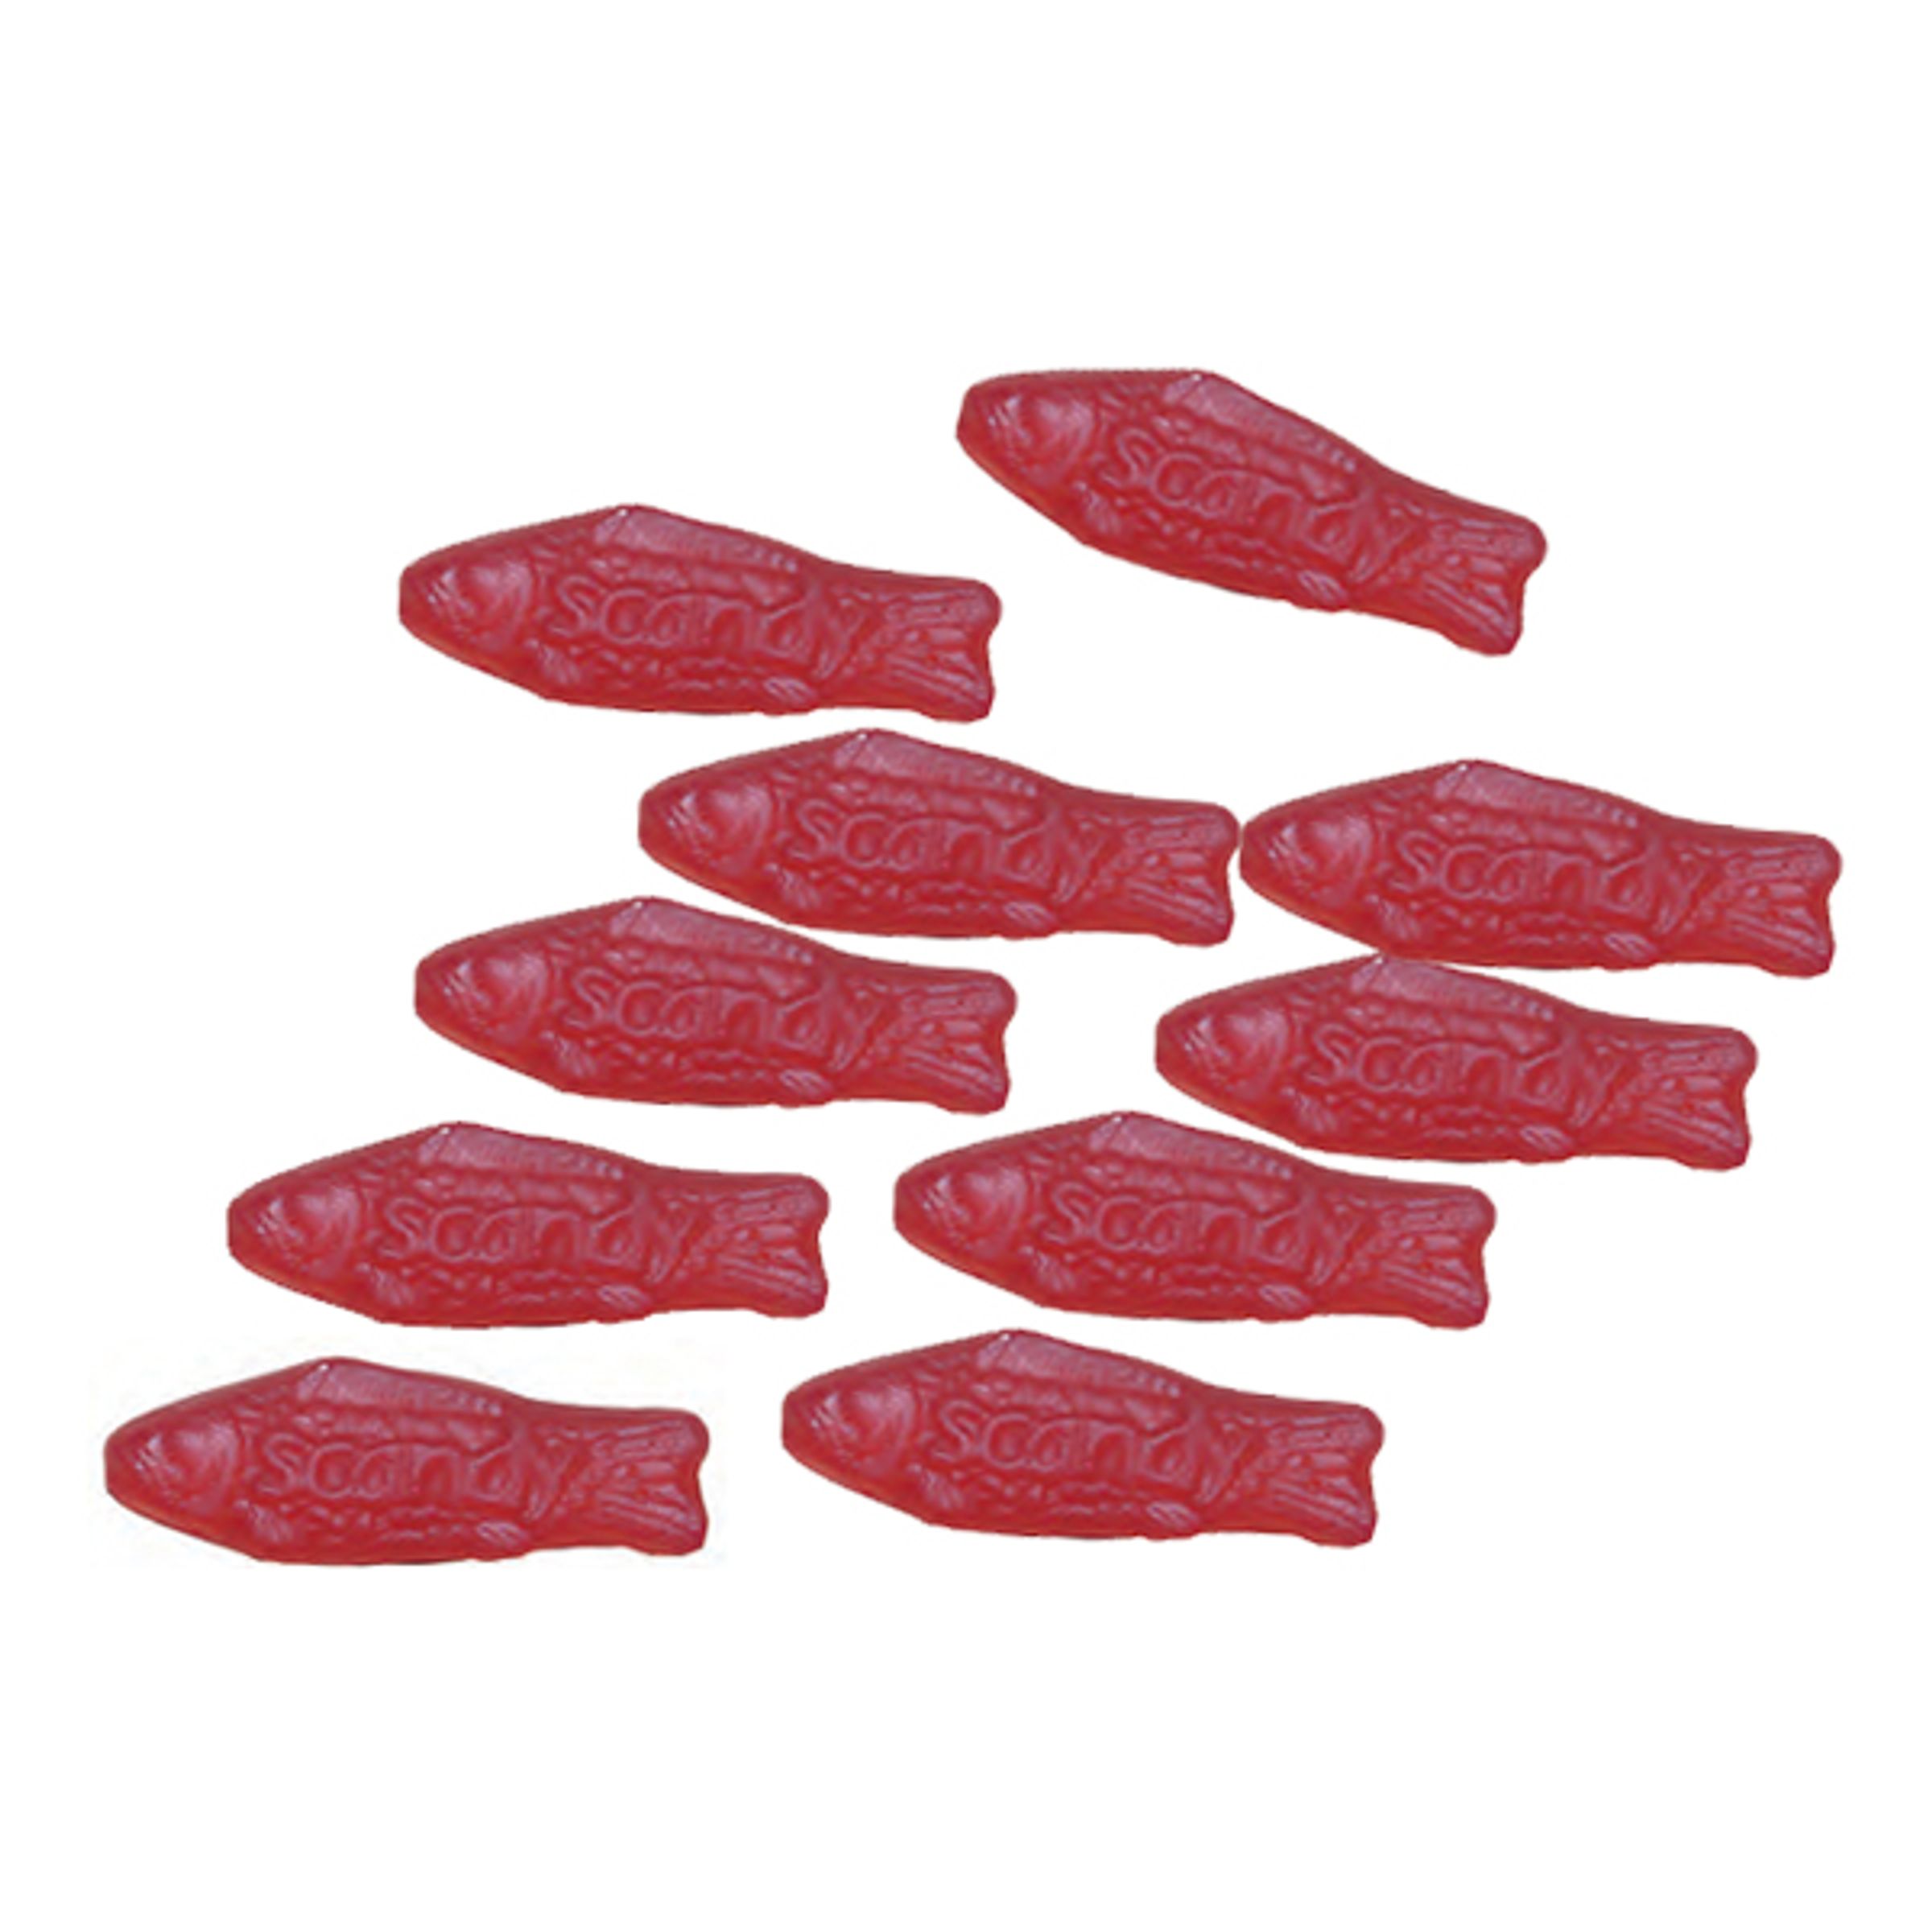 Röda Fiskar Storpack - 2,2 kg